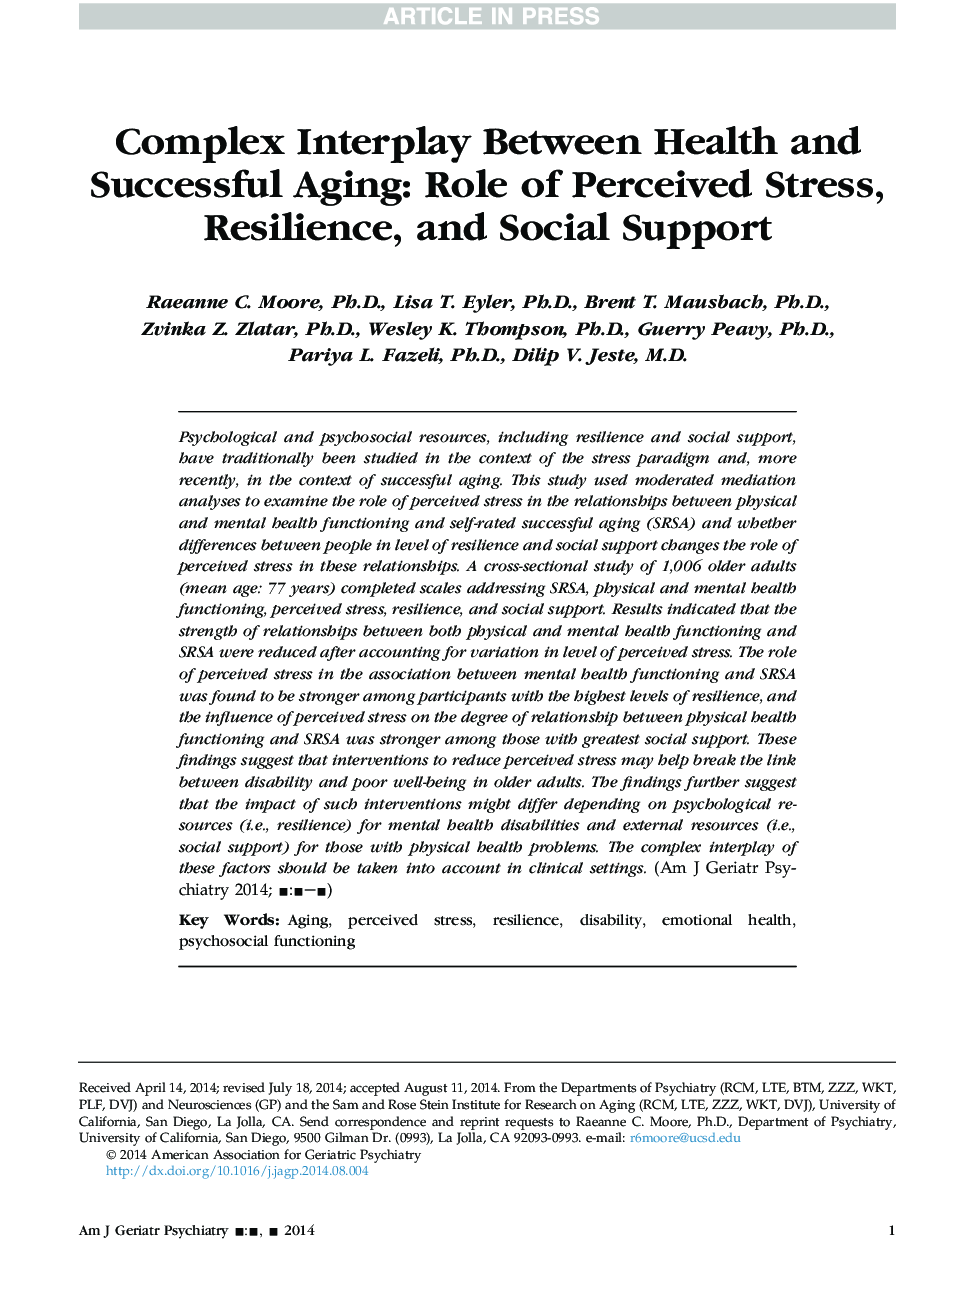 مصالح پیچیده بین سلامت و پیری موفق: نقش استرس درک شده، انعطاف پذیری و حمایت اجتماعی 